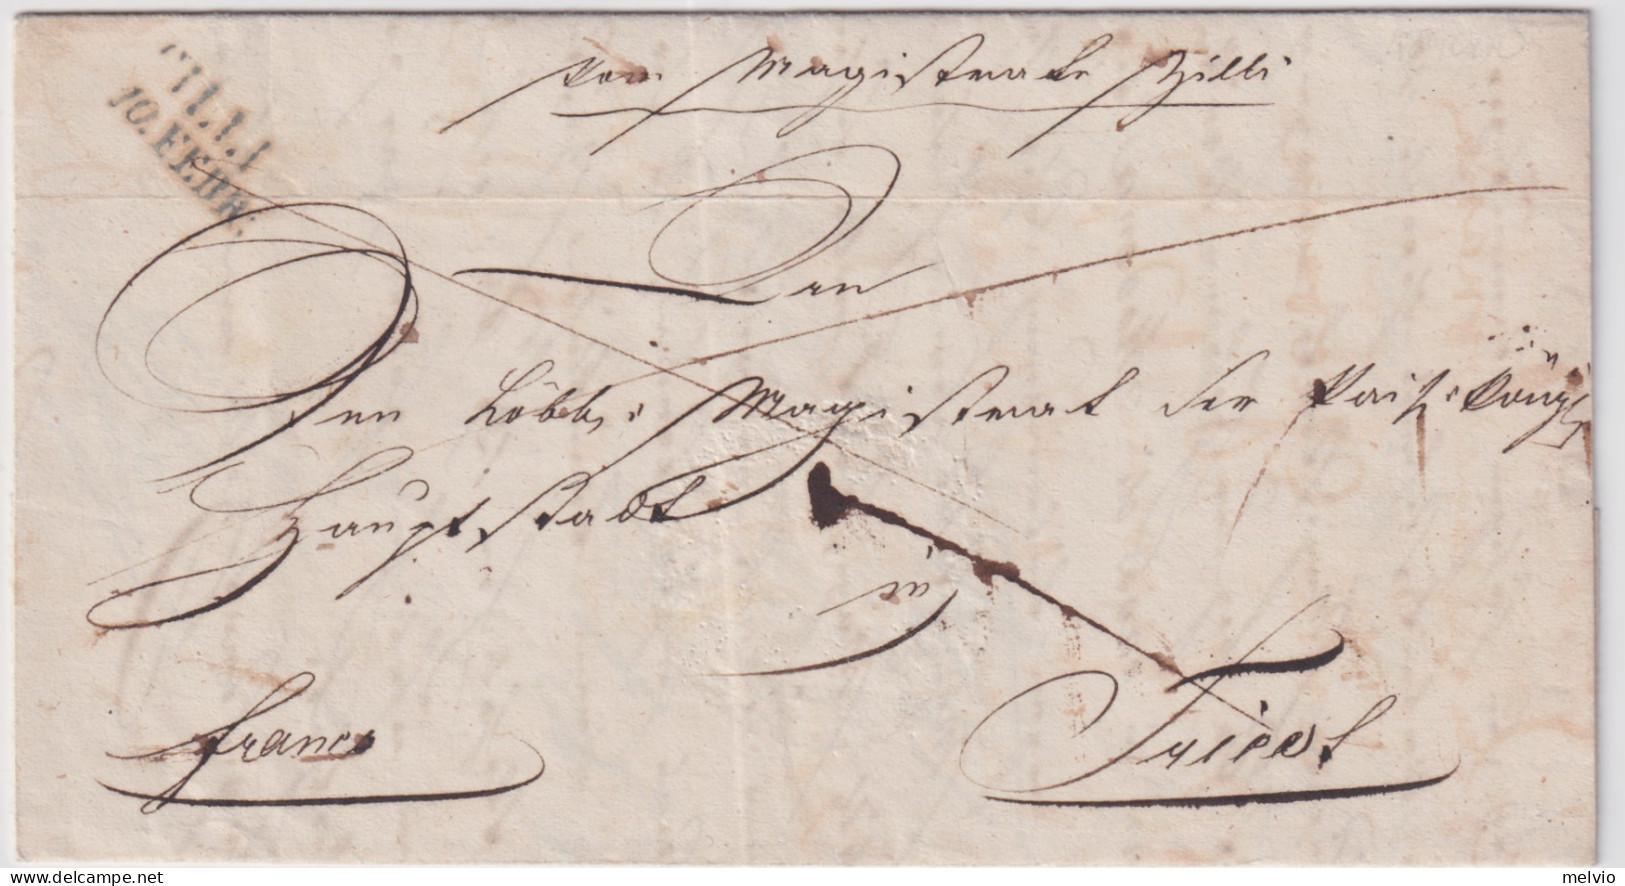 1841-Austria Lettera Con Testo E Bel Sigillo A Secco Lineare Cilli 10 Febb. - ...-1850 Prephilately